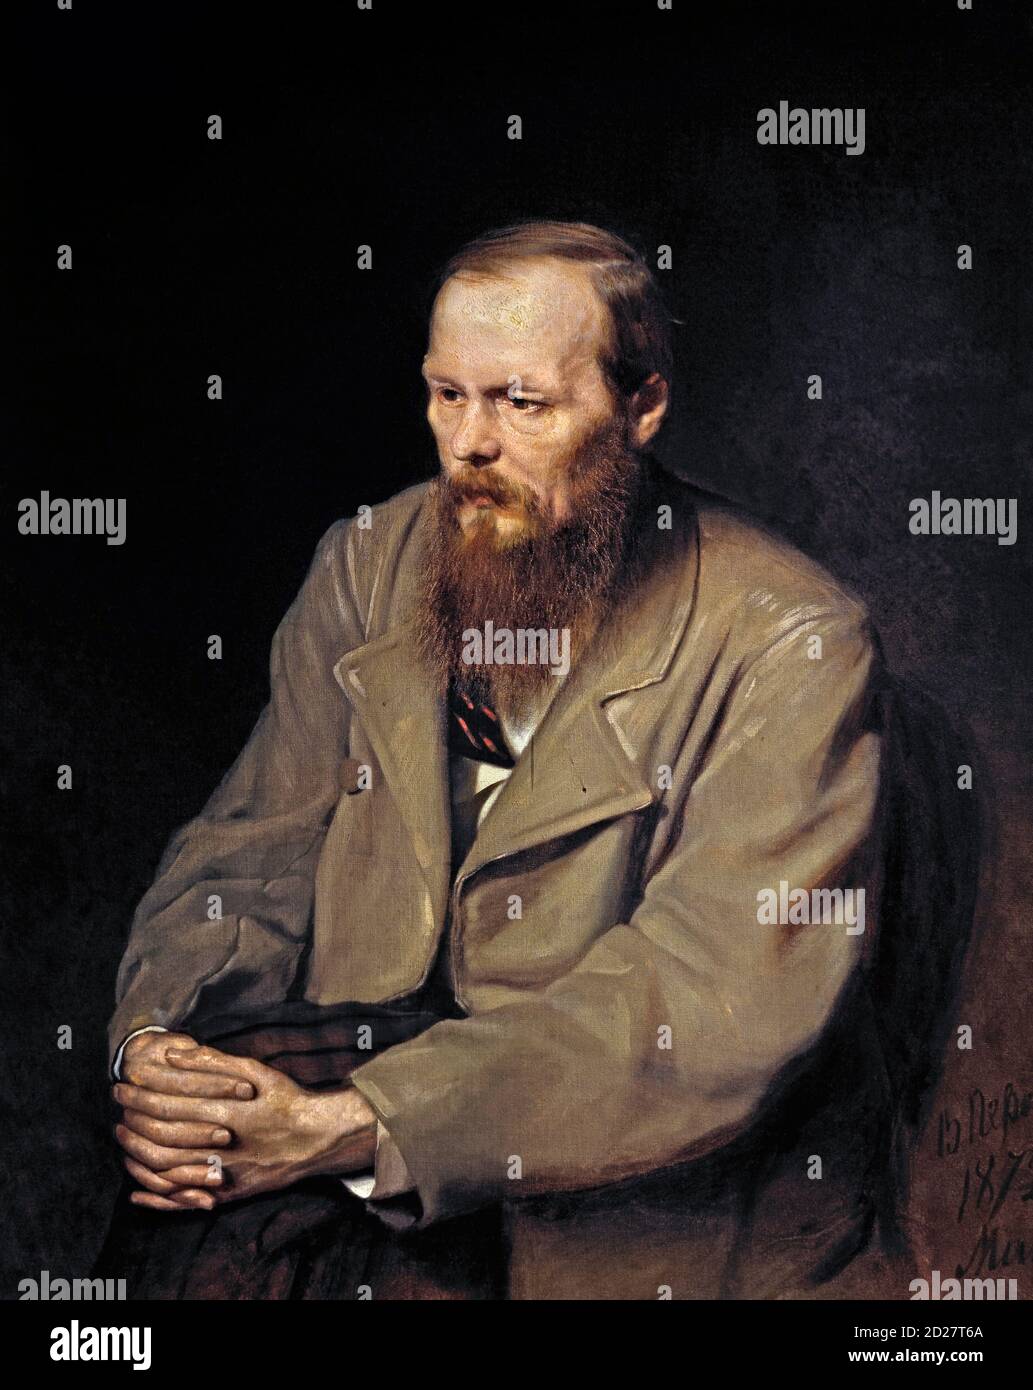 Dostoevskij. Ritratto dello scrittore russo Fyodor Mikhailovich Dostoevsky (1821-1881) di Vasily Perov, olio su tela, 1872. Fedor Dostoyevsky. Foto Stock